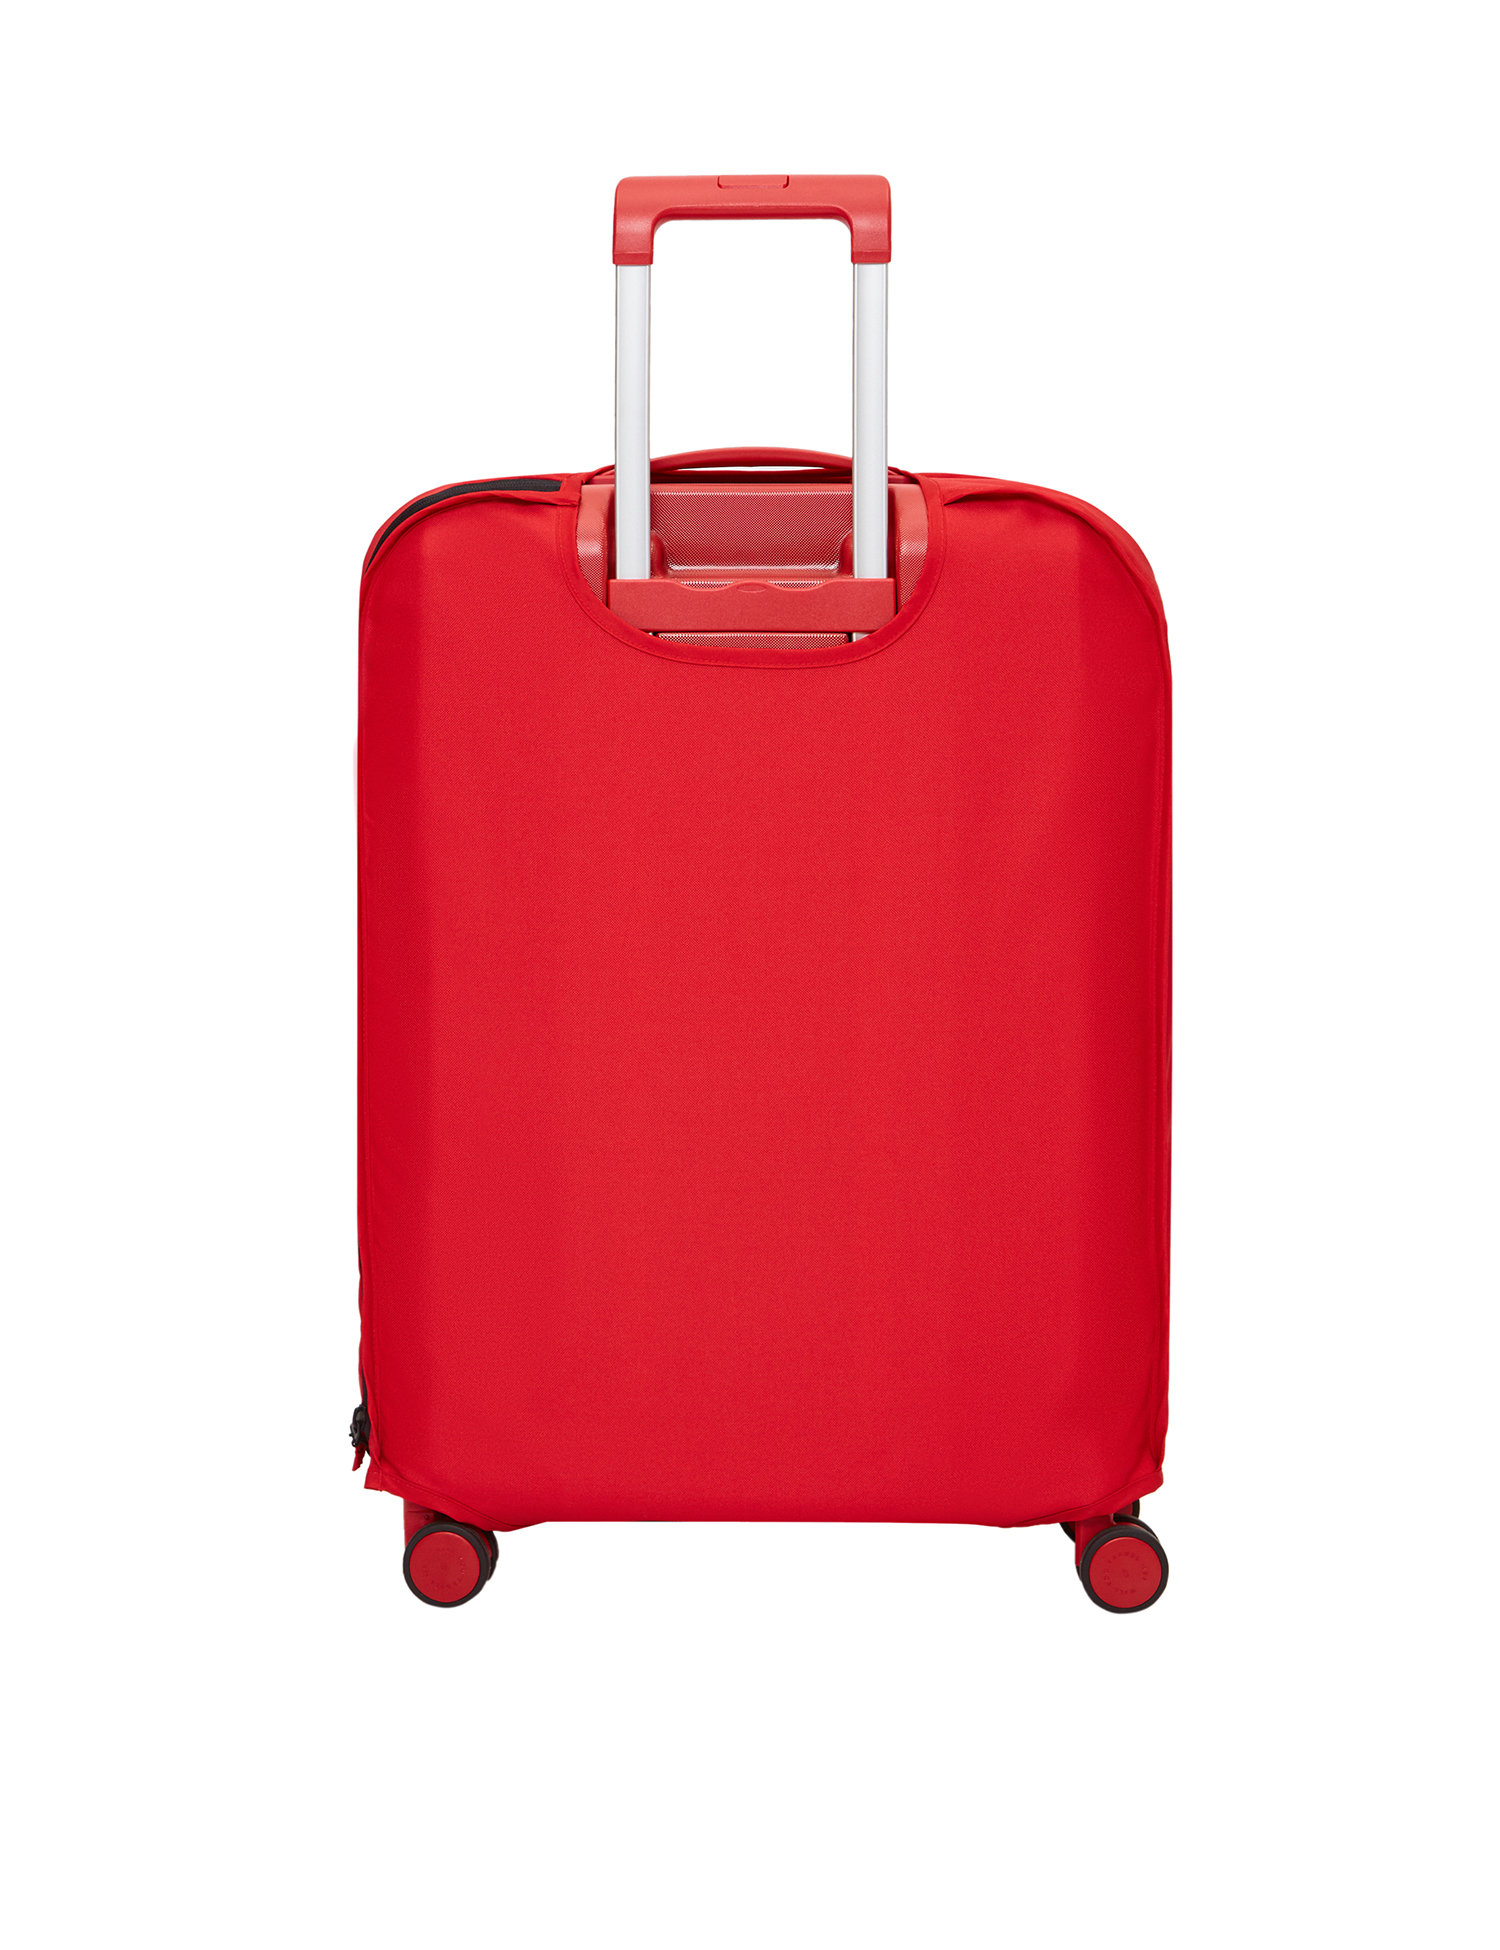 Картинка Захисний чохол для валіз ECO TRAVEL SMALL червоний